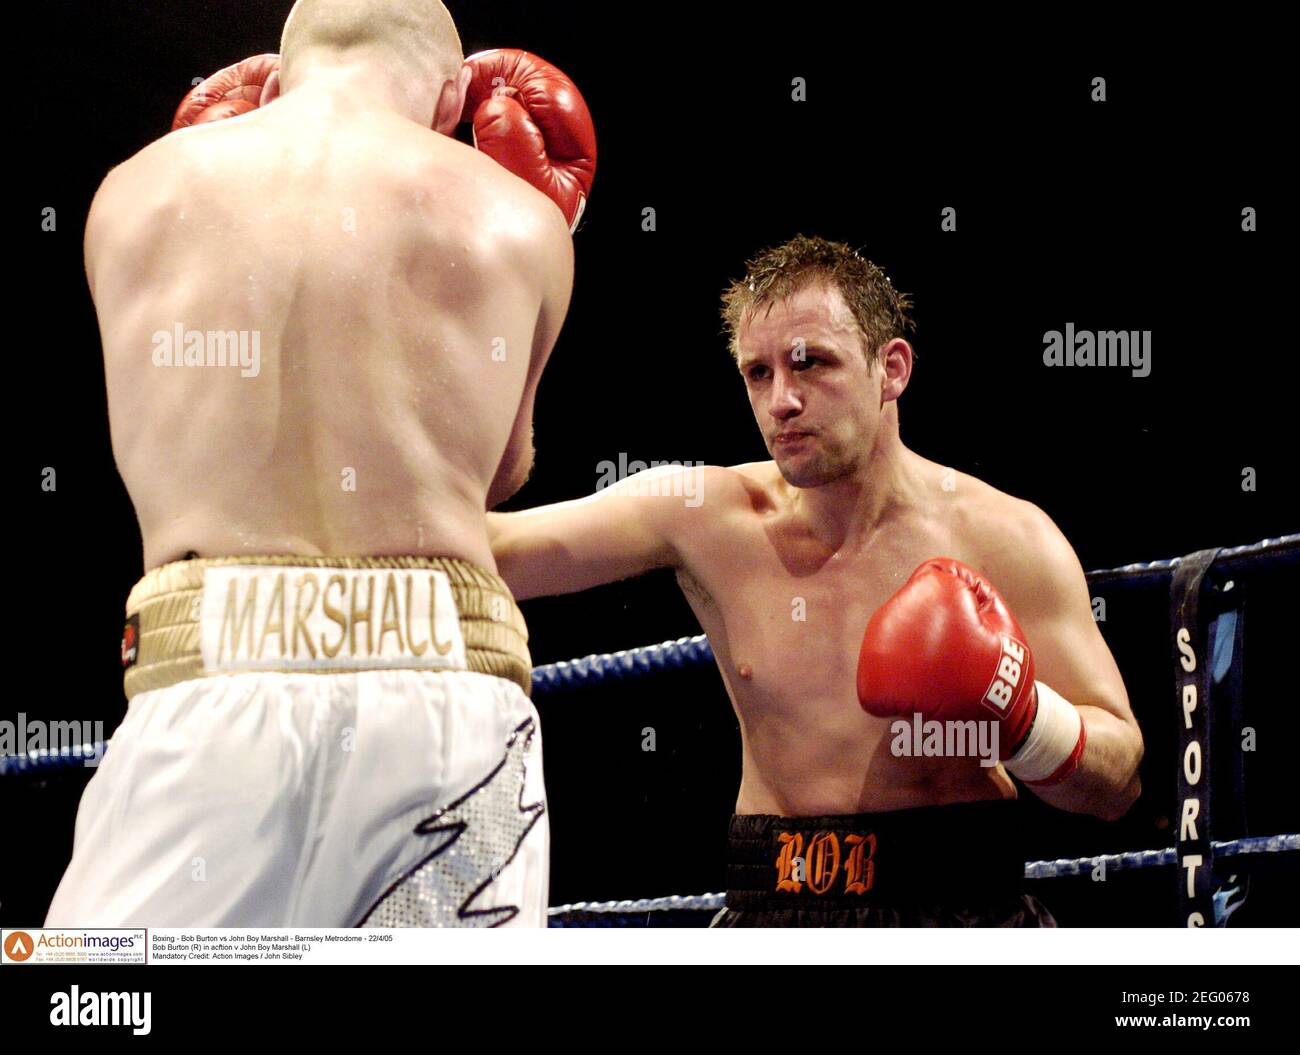 Boxing - Bob Burton vs John Boy Marshall - Barnsley Metrodome - 22/4/05 Bob  Burton (R) in acftion v John Boy Marshall (L) Mandatory Credit: Action  Images / John Sibley Stock Photo - Alamy